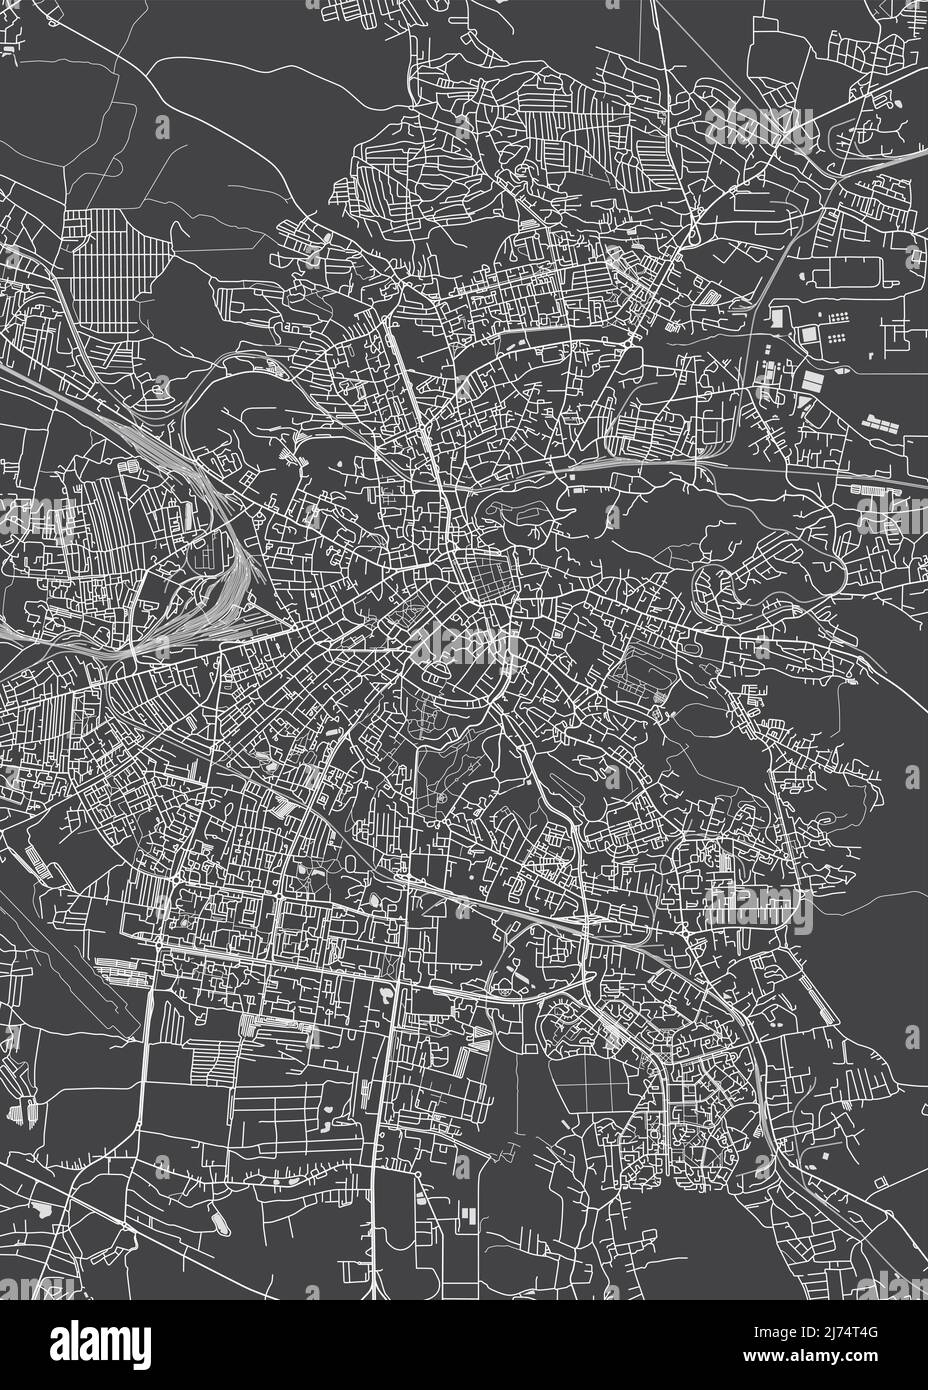 Stadtplan Lviv, monochromer Detailplan, Vektorgrafik Stock Vektor